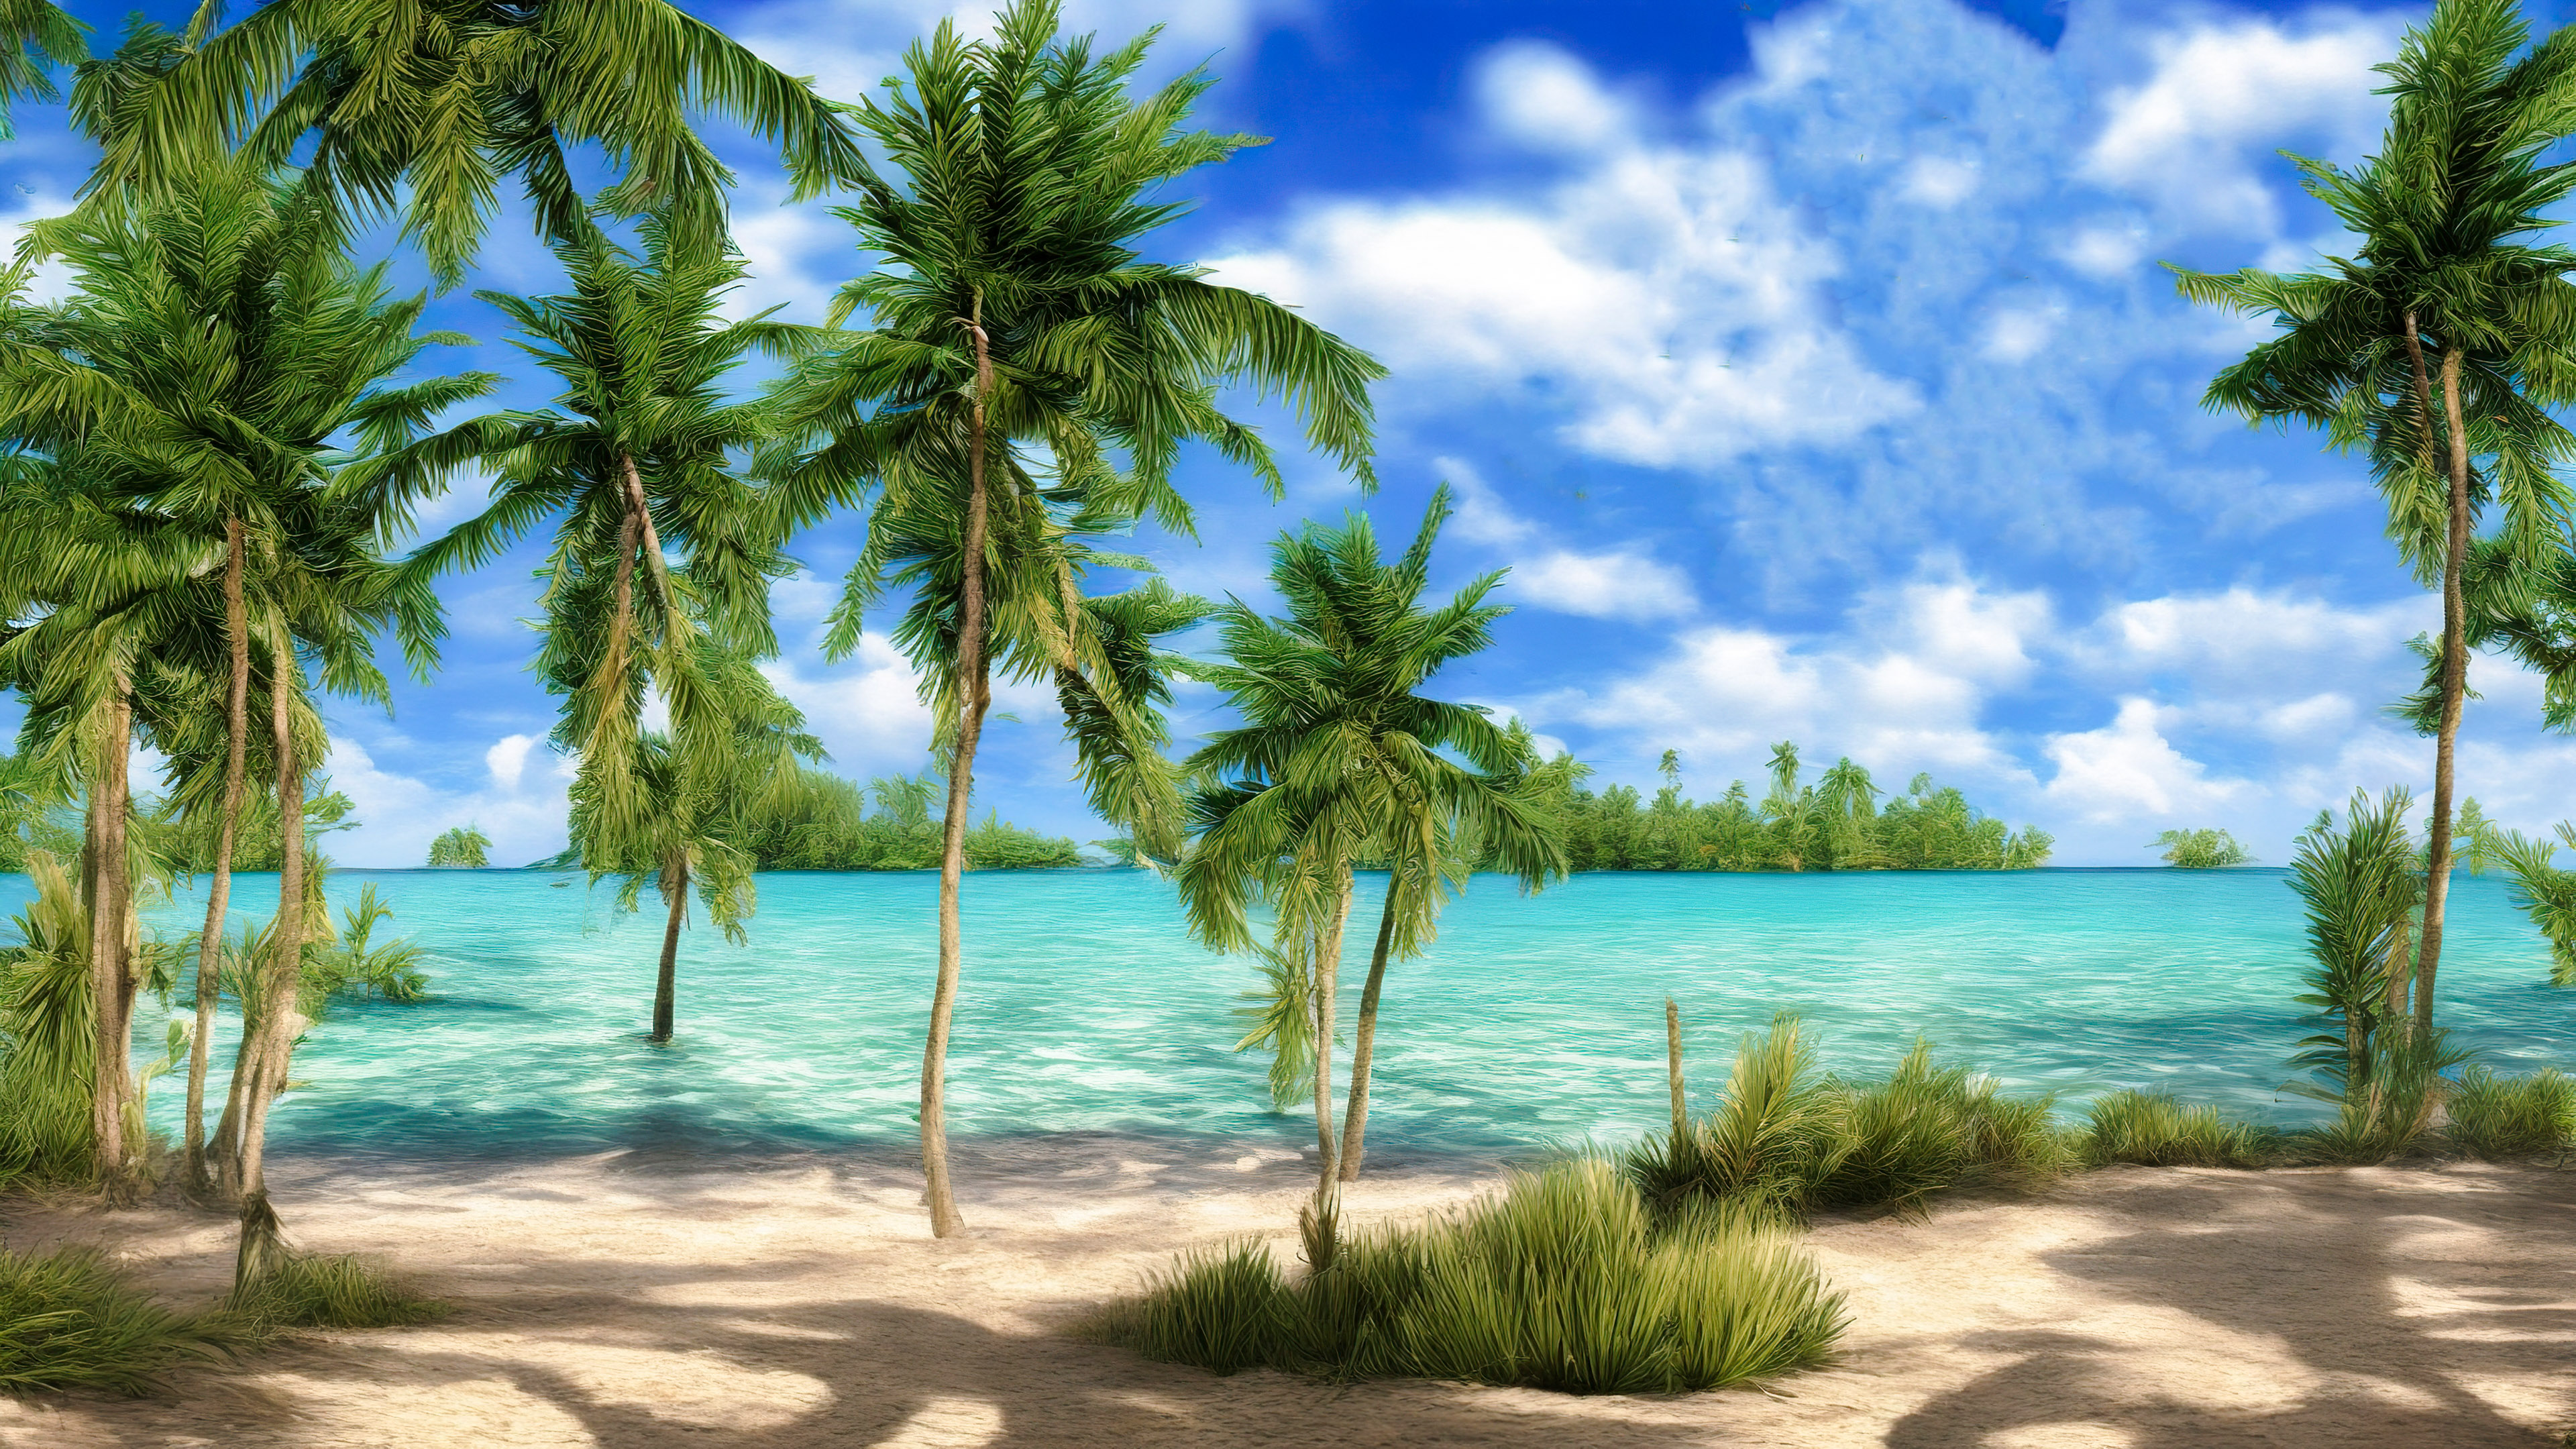 Téléchargez ce fond d'écran 4K enchanteur de beaux paysages présentant une plage tranquille avec des eaux turquoise cristallines et des palmiers se balançant dans la brise. 